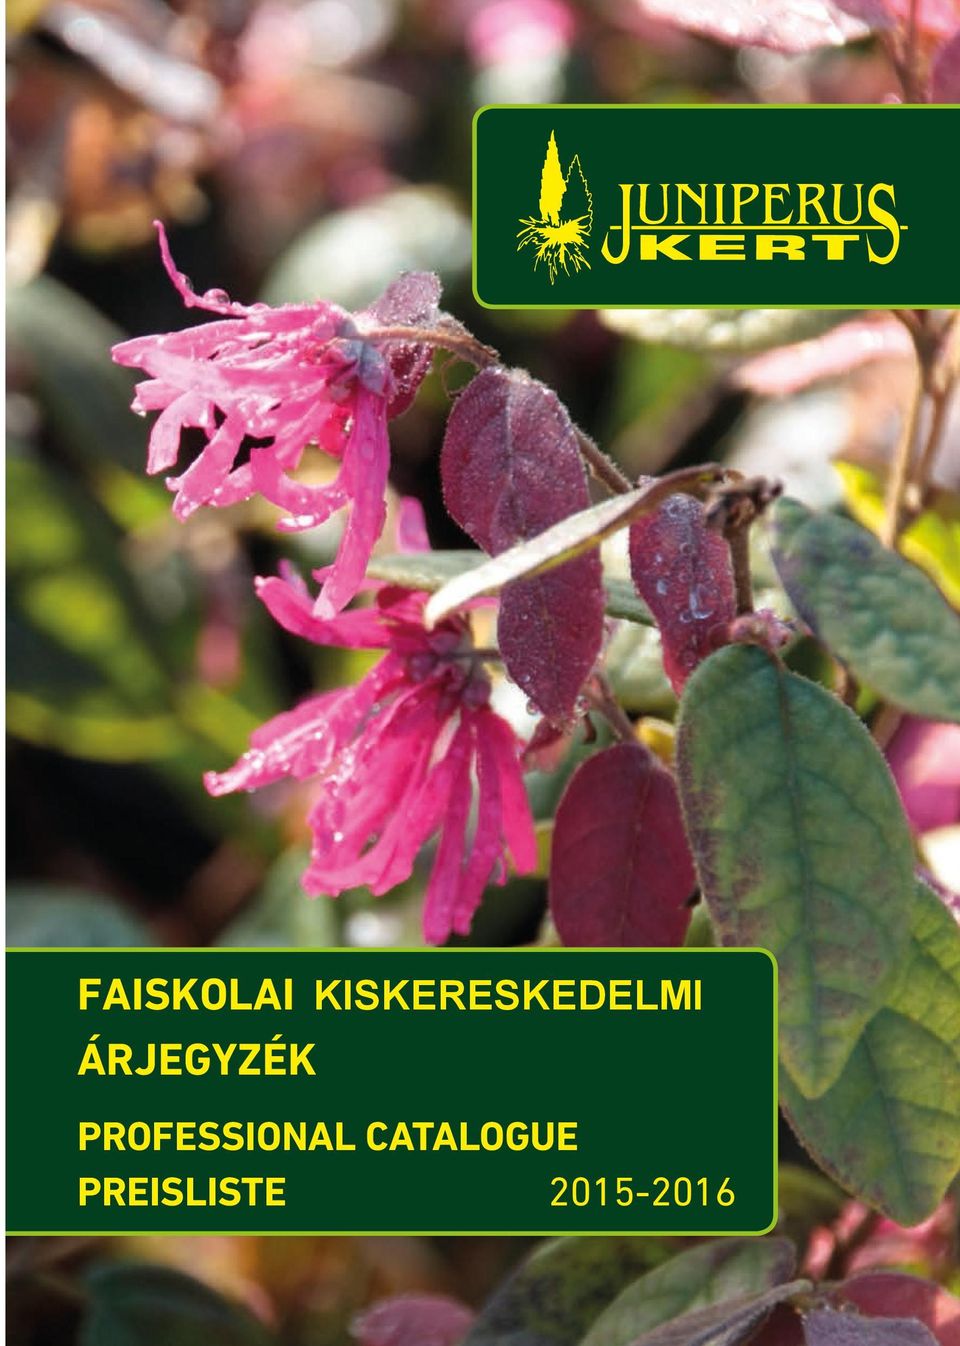 E-mail: juniperus@kefag.hu, juniperusexport@kefag.